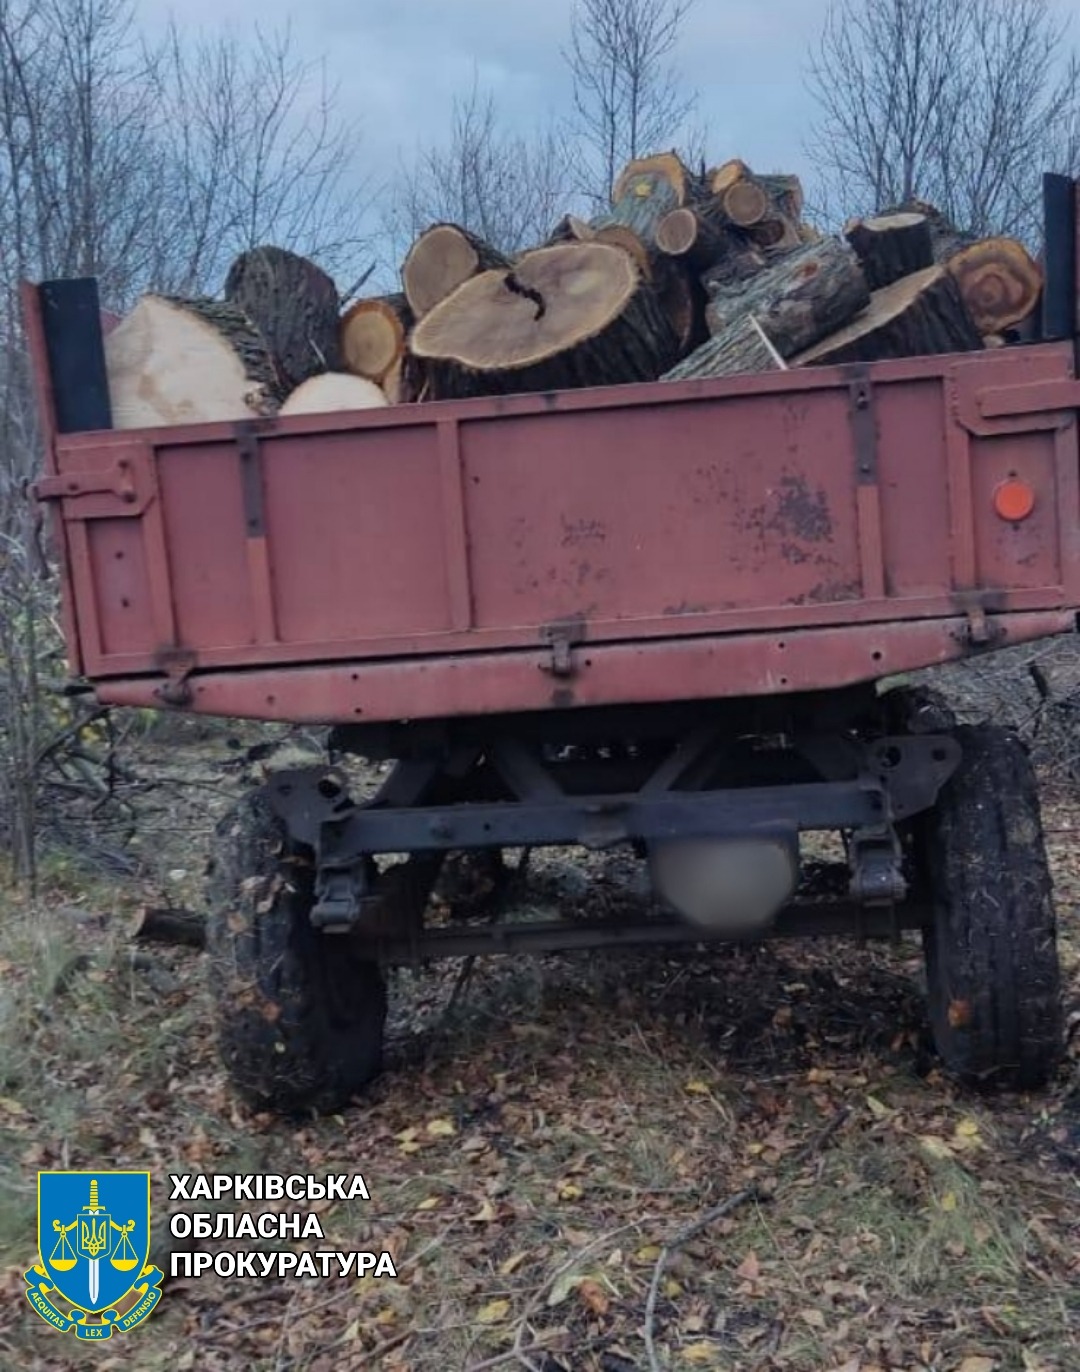 В Харьковской области браконьер нарубил леса на 300 тысяч гривен — прокуратура